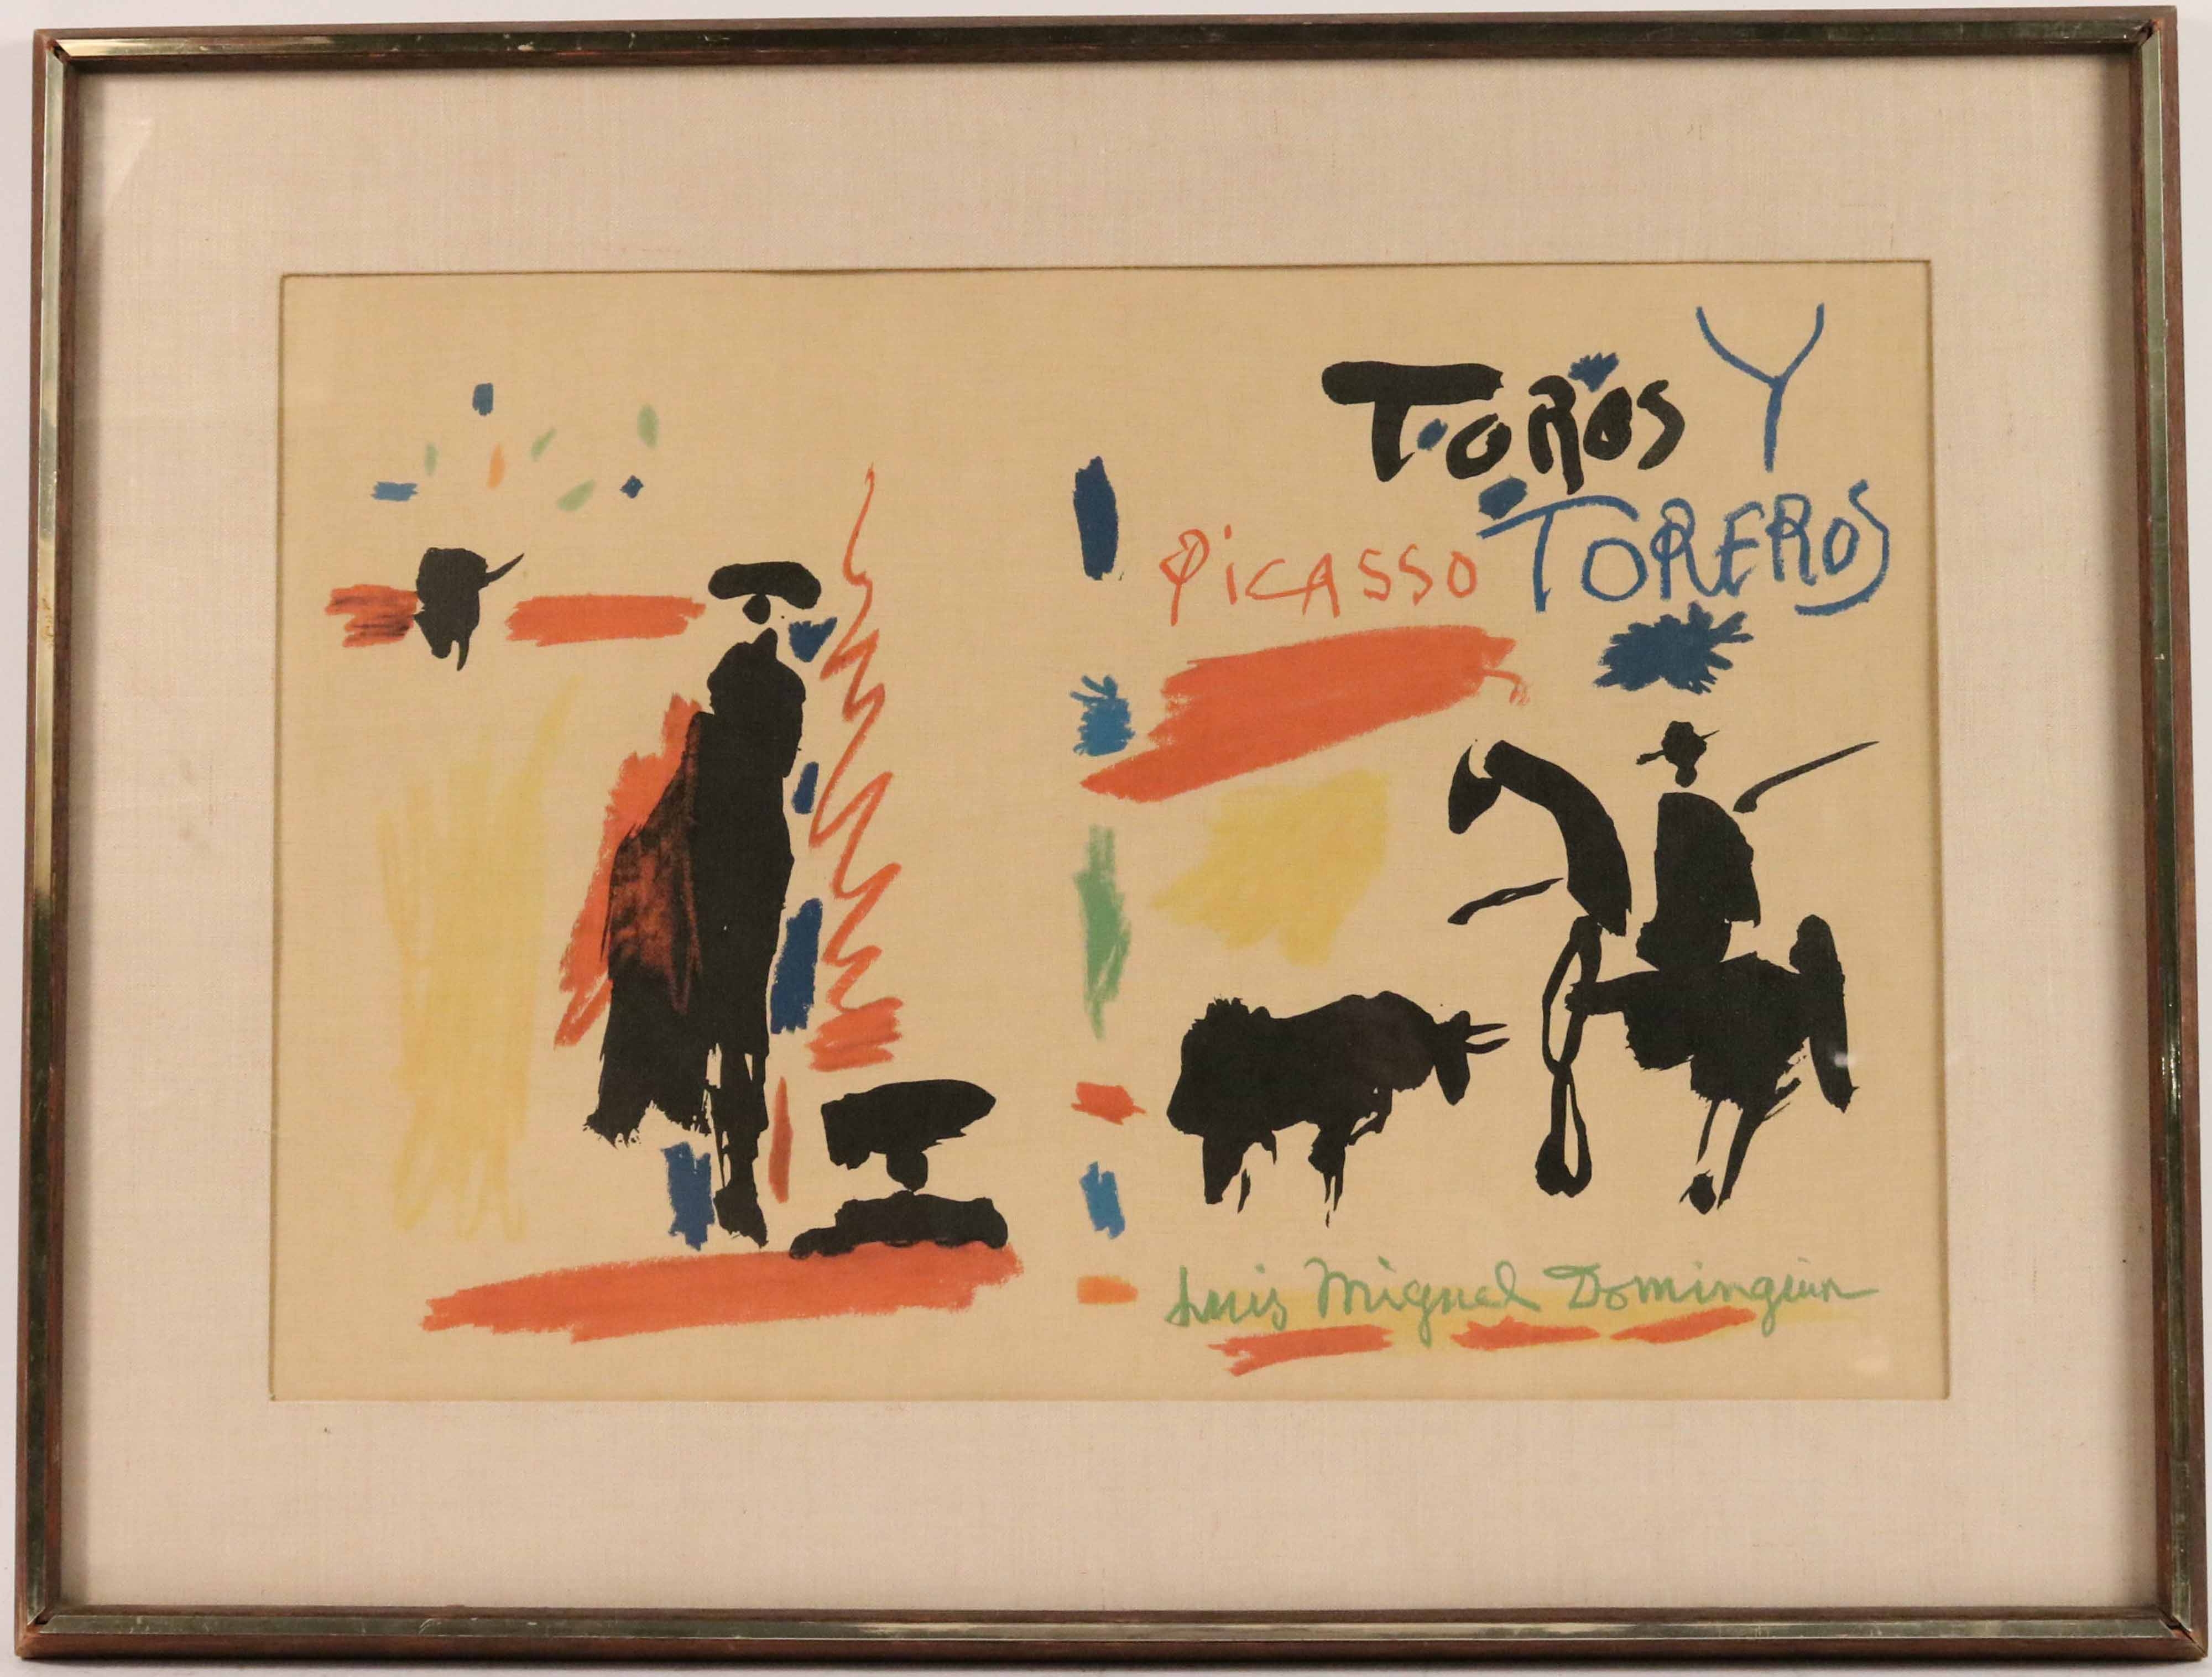 Toros y Toreros by Pablo Picasso